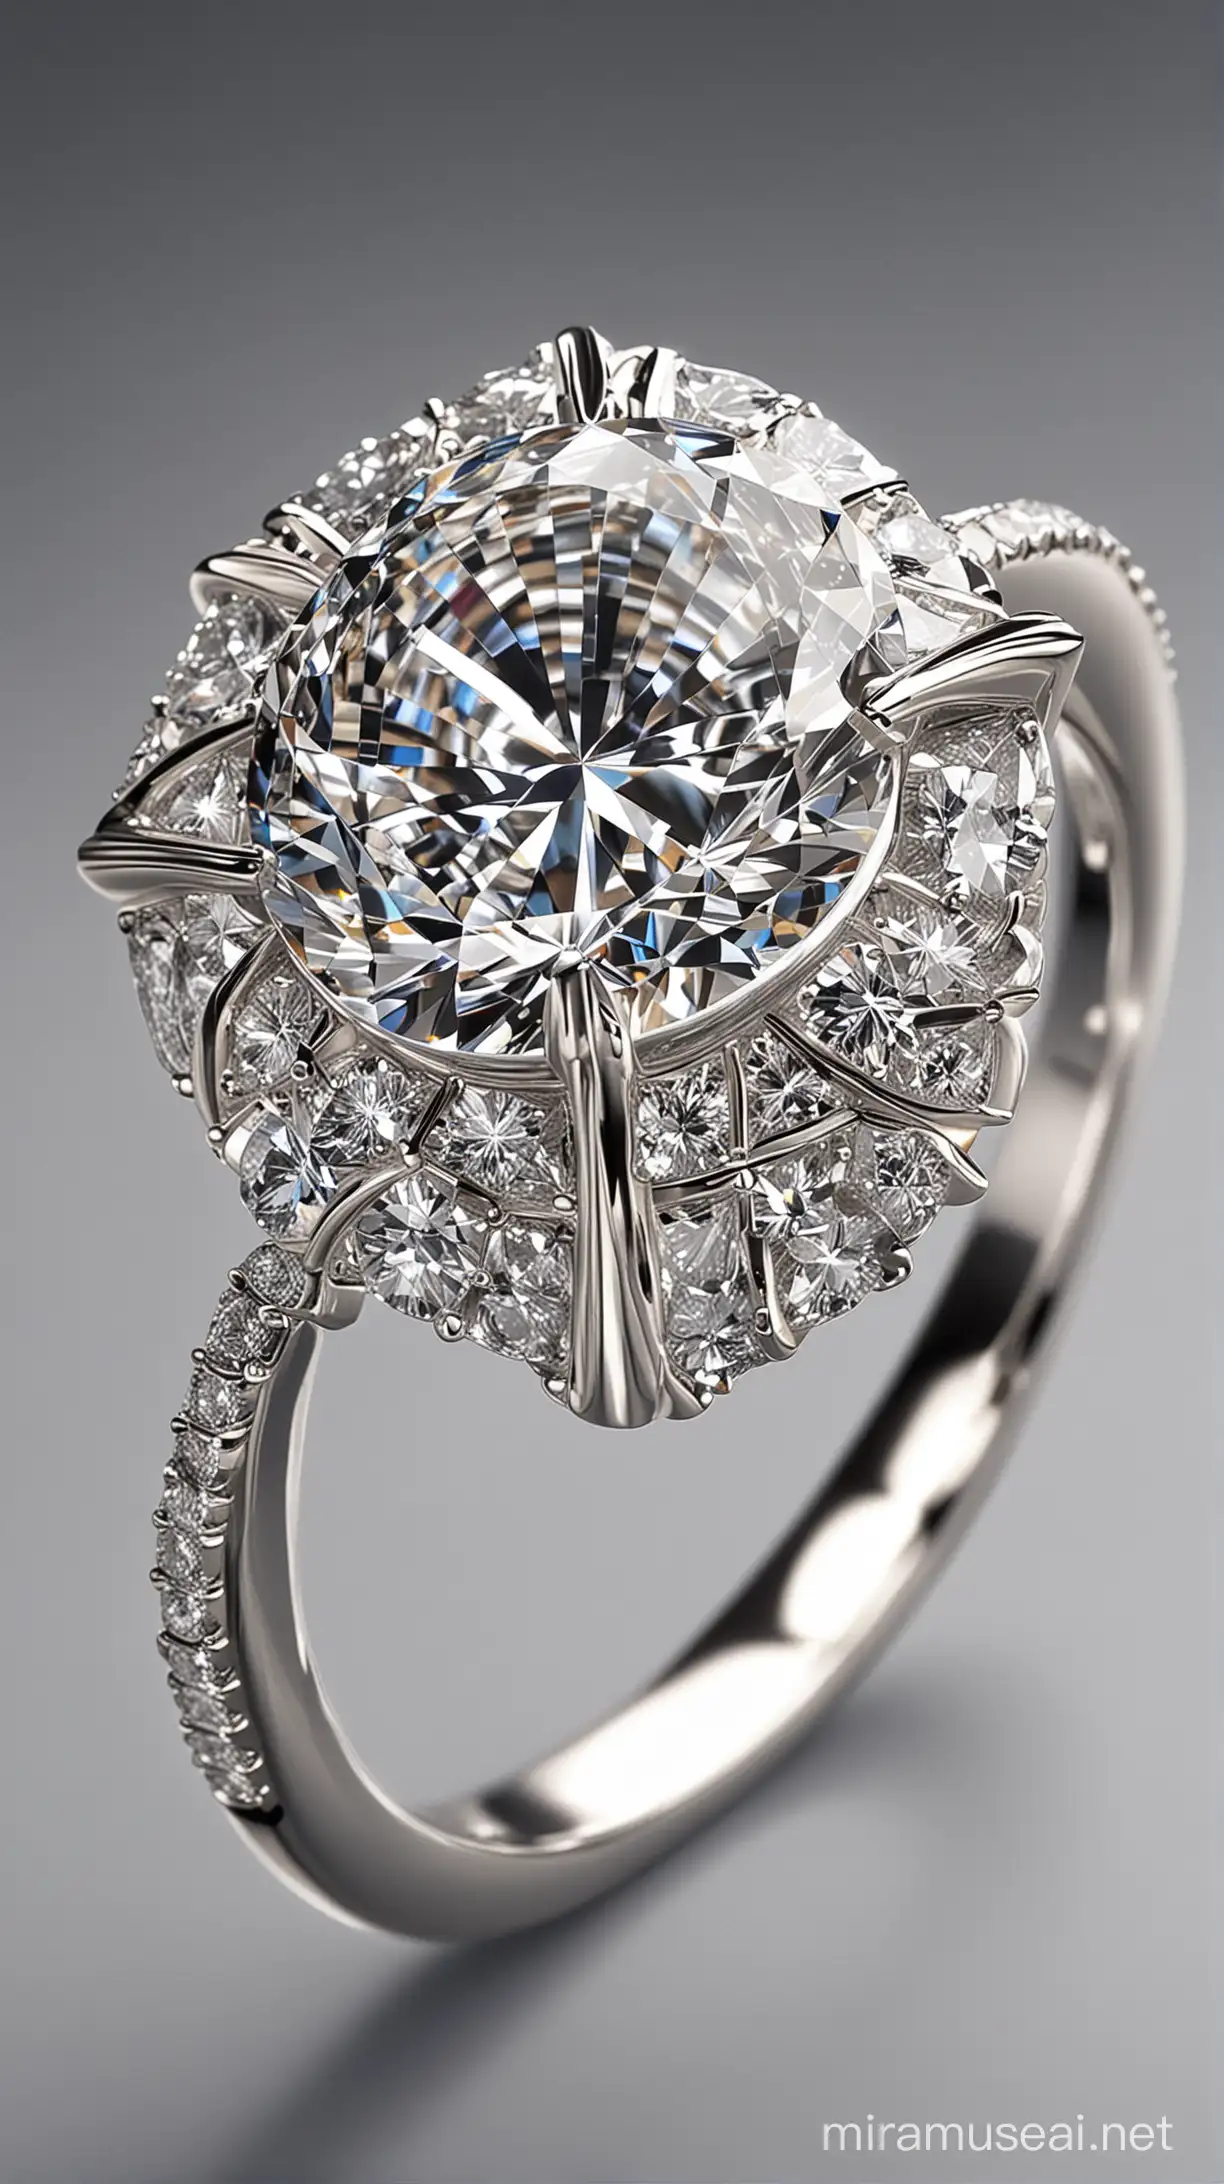 خاتم الماسي مصنوع من الماس الفاخر بتقطيعات هندسية رائعة